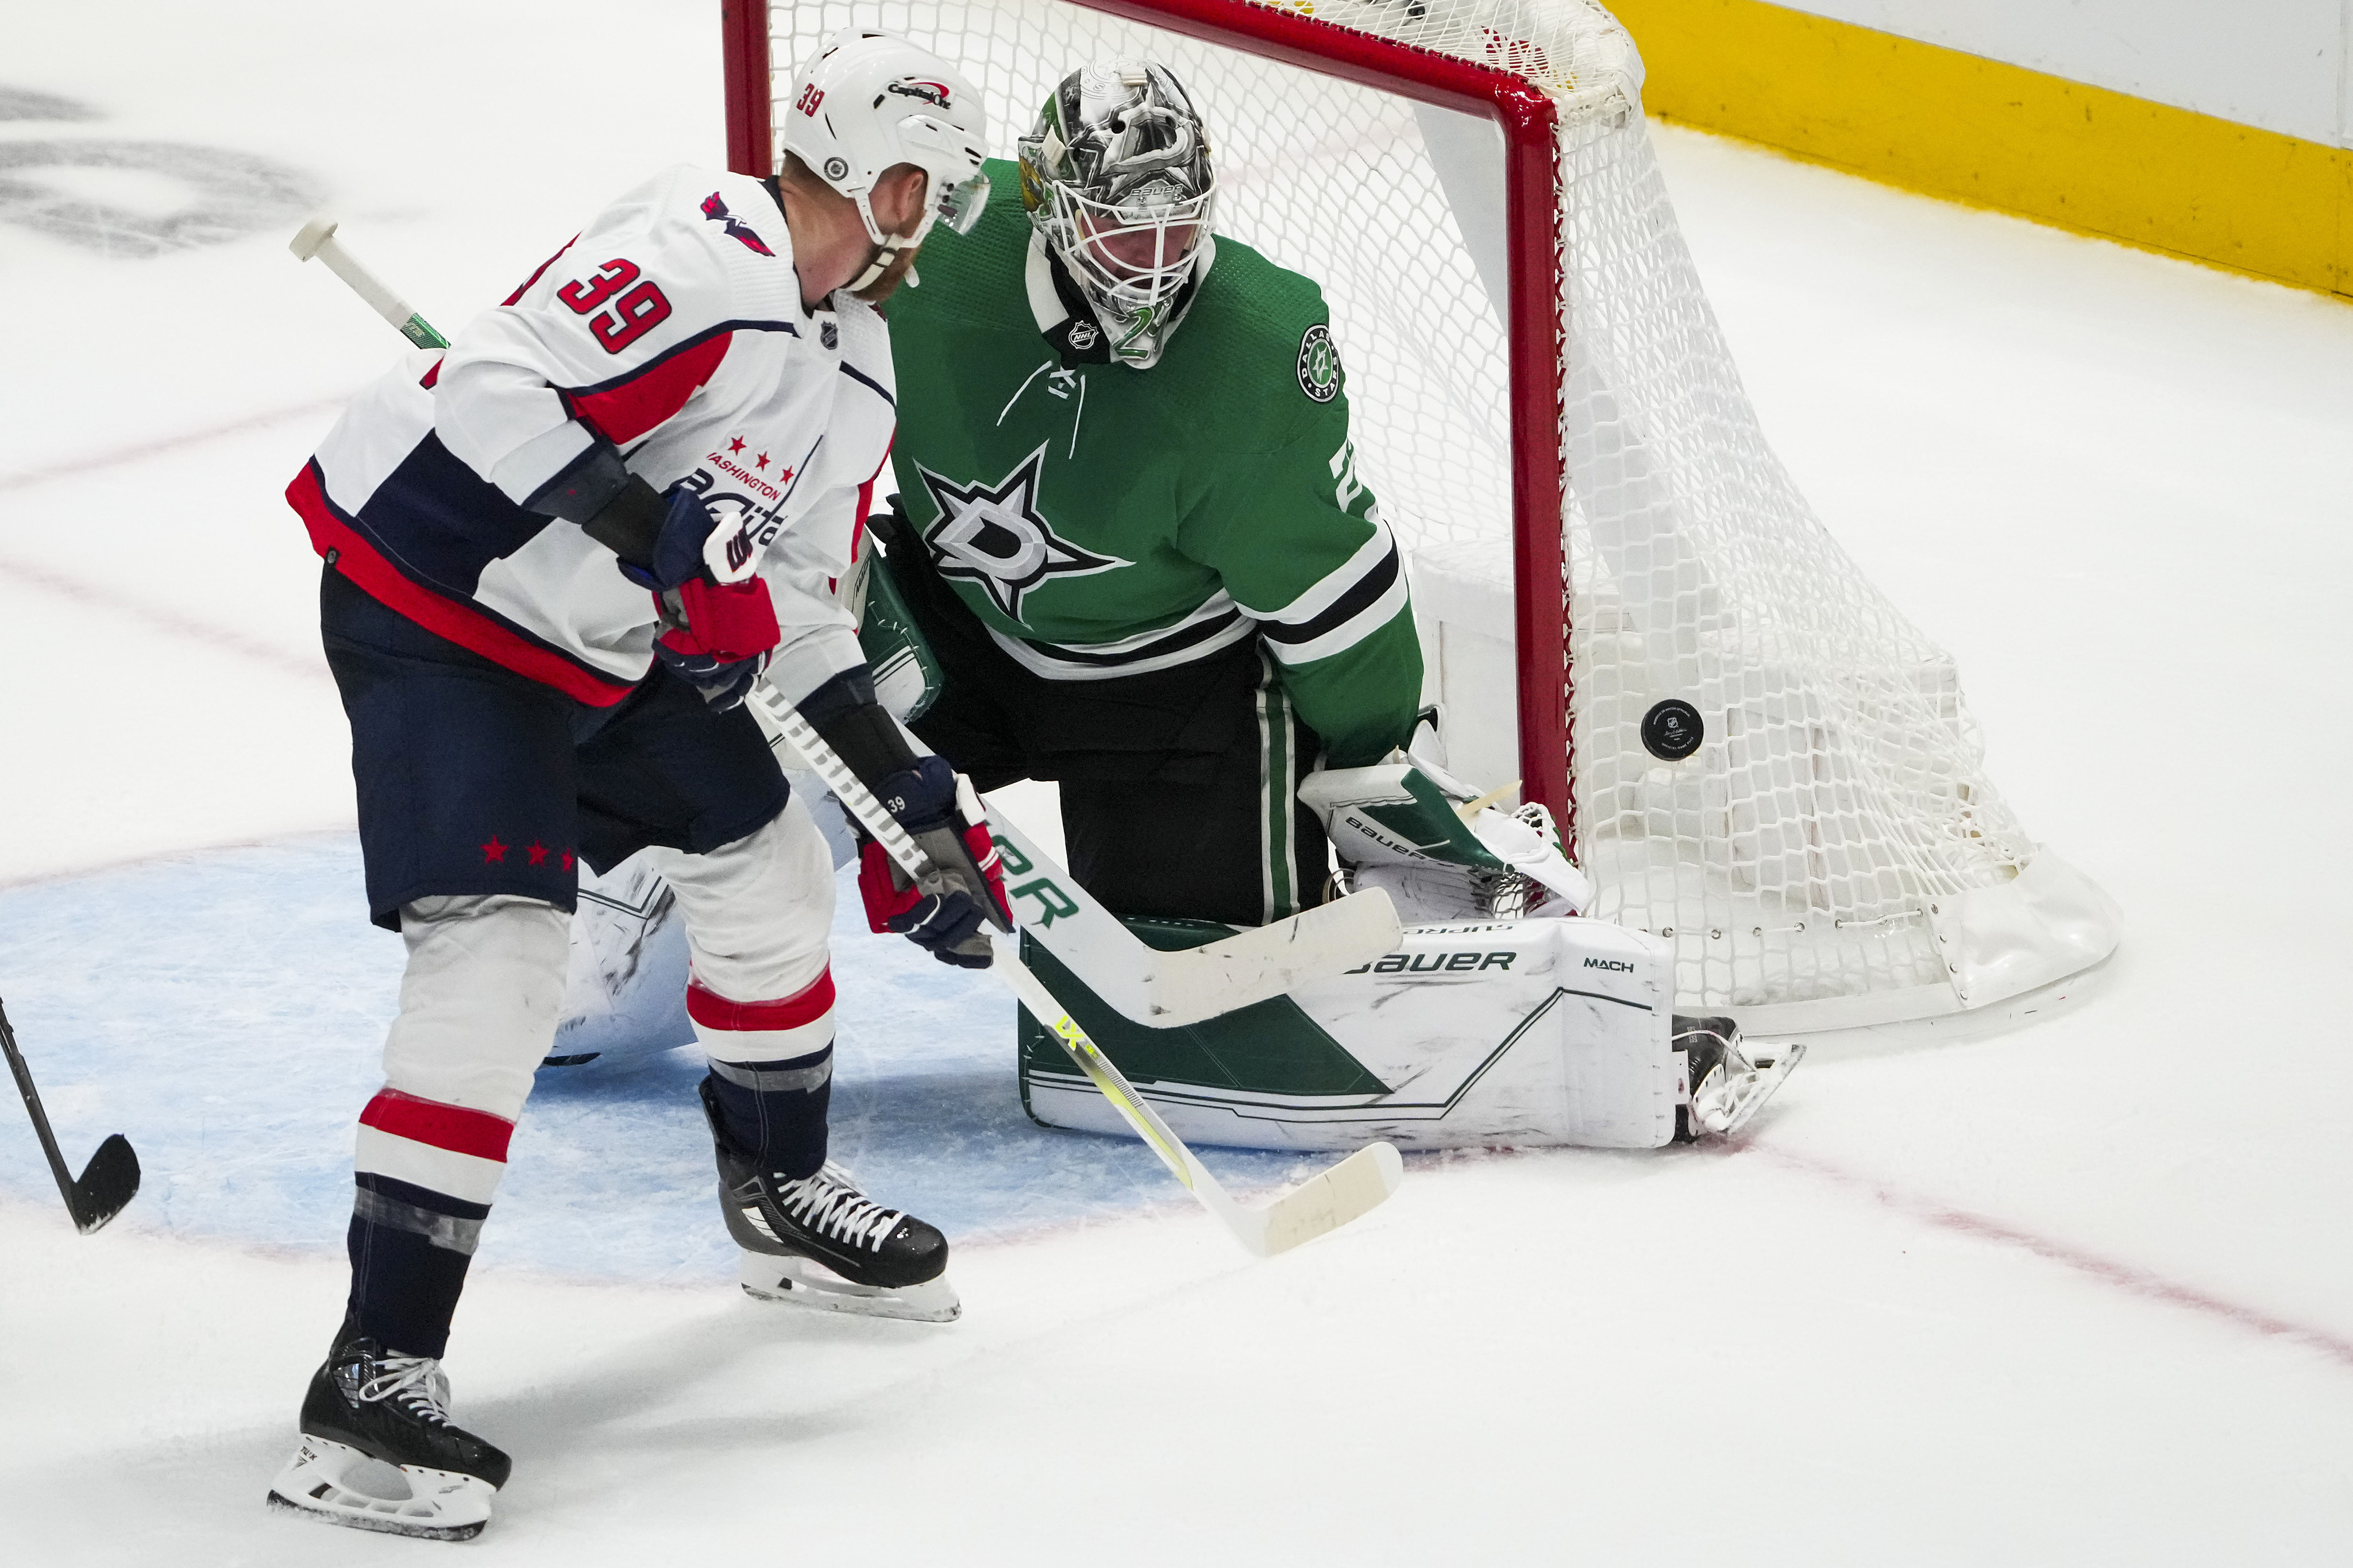 Stars send goalie Matt Murray to AHL, signaling possible return of starter  Jake Oettinger